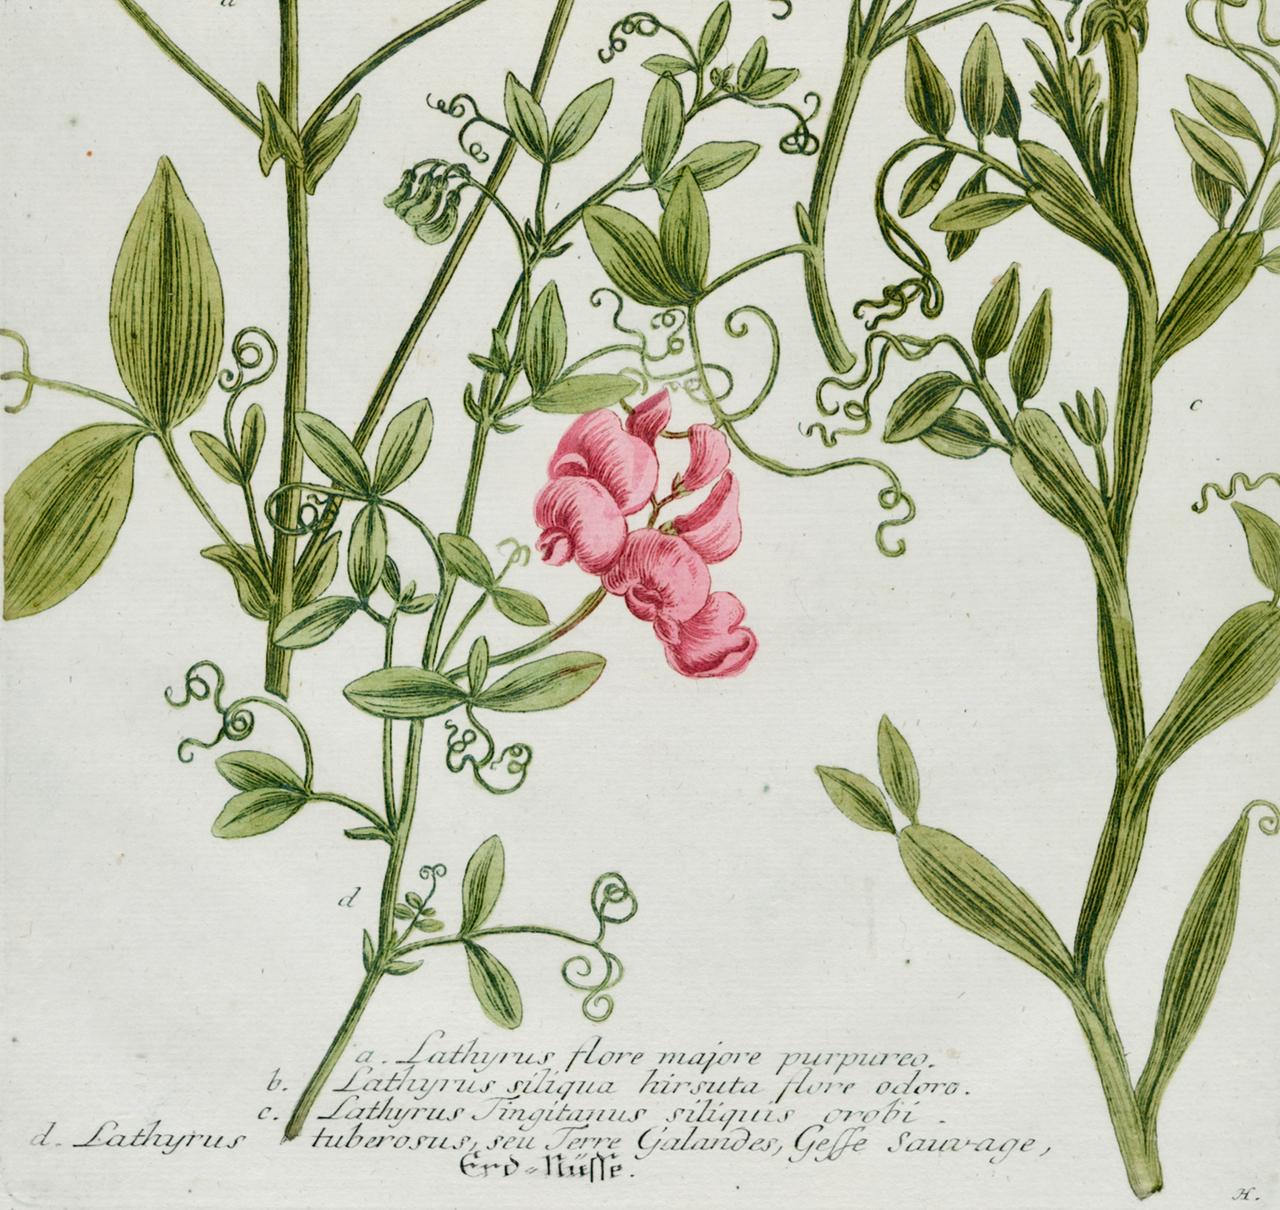 Dies ist ein originaler, antiker, kolorierter, botanischer Schabkunst- und Strichstich von blühenden roten Zuckererbsen, der mit Handkolorierung veredelt ist. Es trägt den Titel 